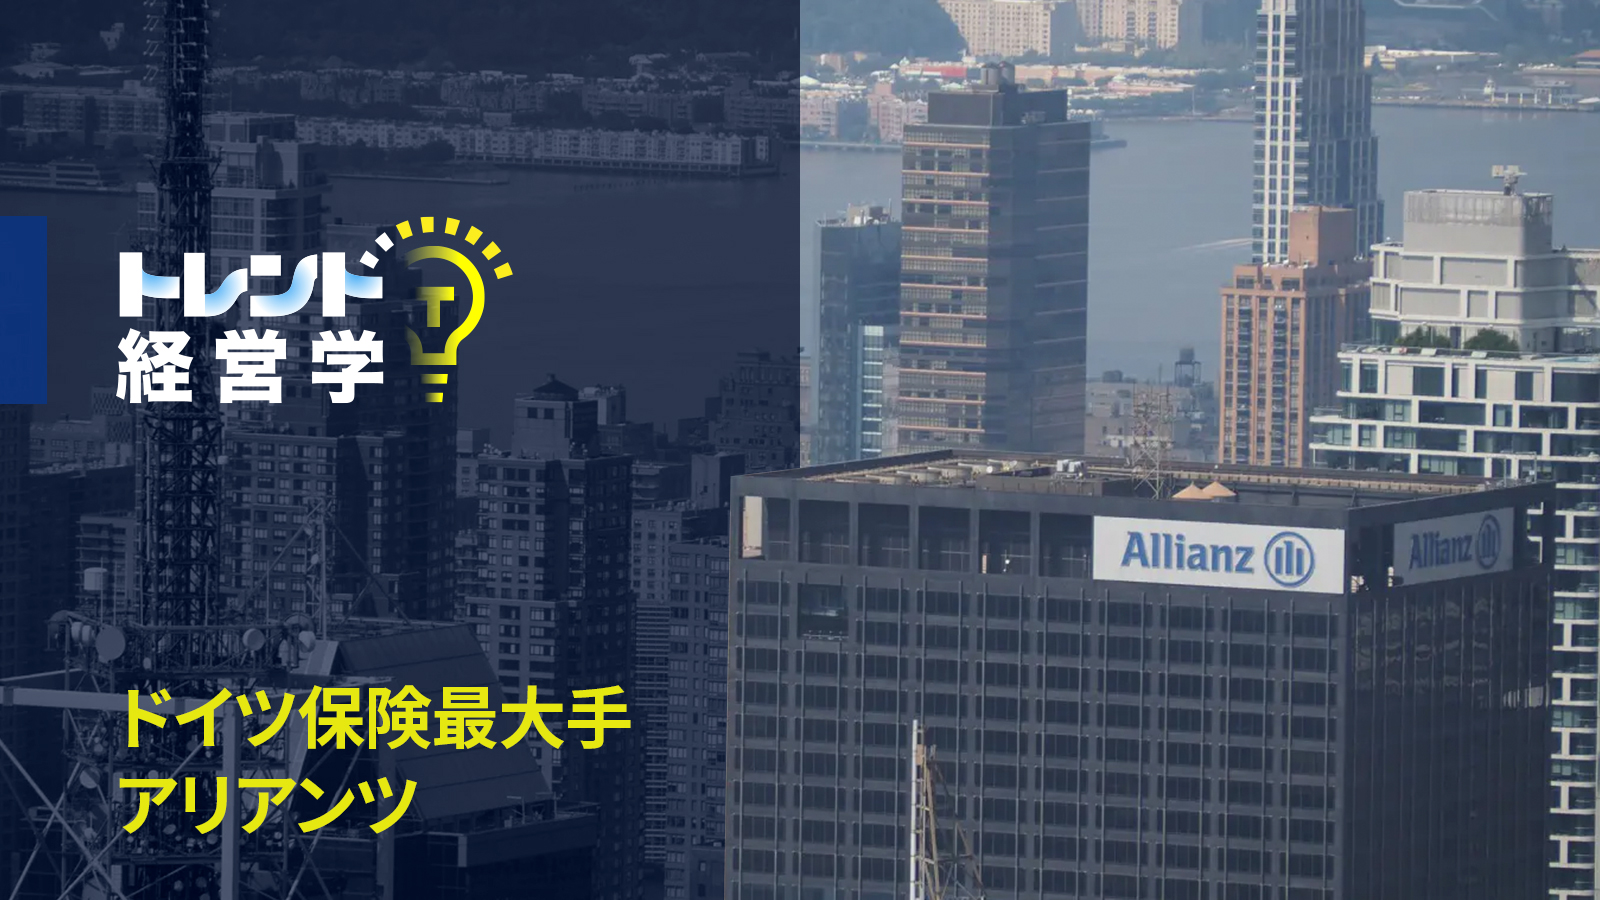 ドイツ保険最大手アリアンツが東京のマンションを物色するワケ